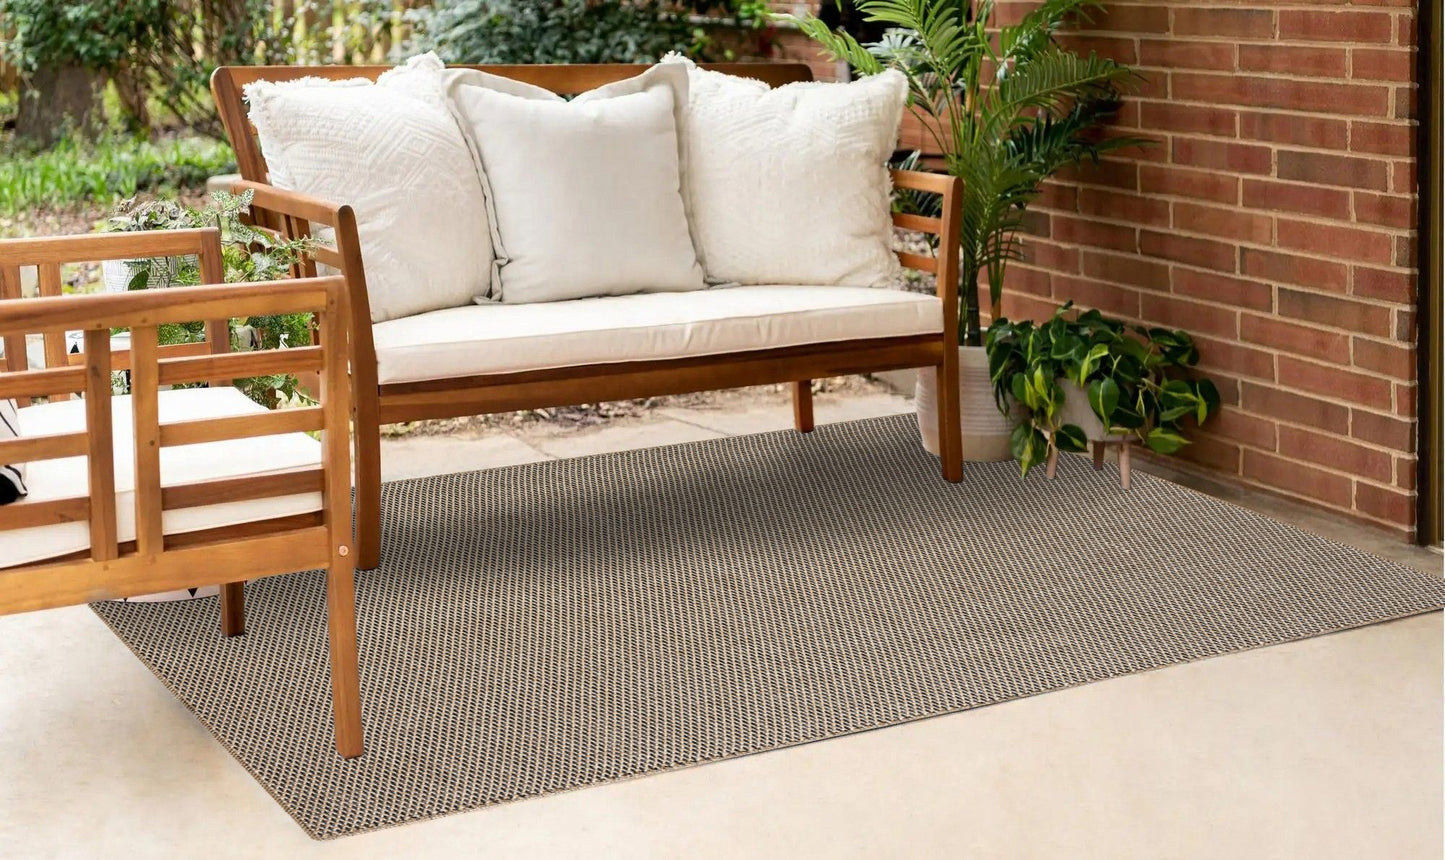 Friolero 2575 - Carpet (80 x 300)